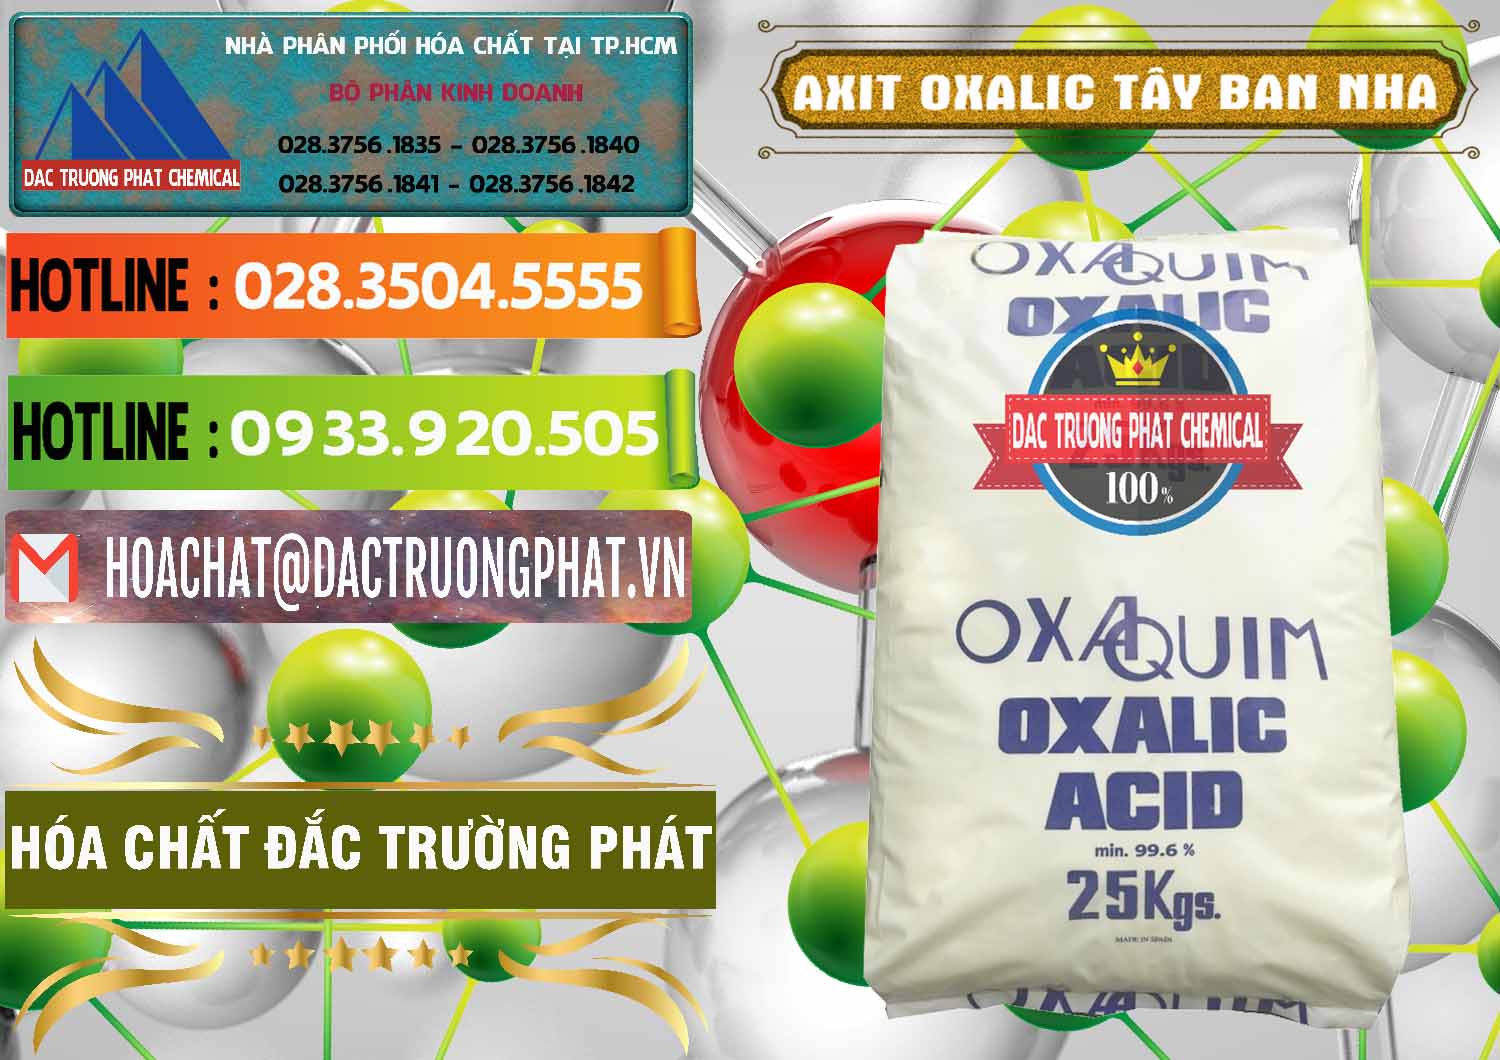 Nơi bán và phân phối Acid Oxalic – Axit Oxalic 99.6% Tây Ban Nha Spain - 0269 - Kinh doanh - phân phối hóa chất tại TP.HCM - cungcaphoachat.com.vn